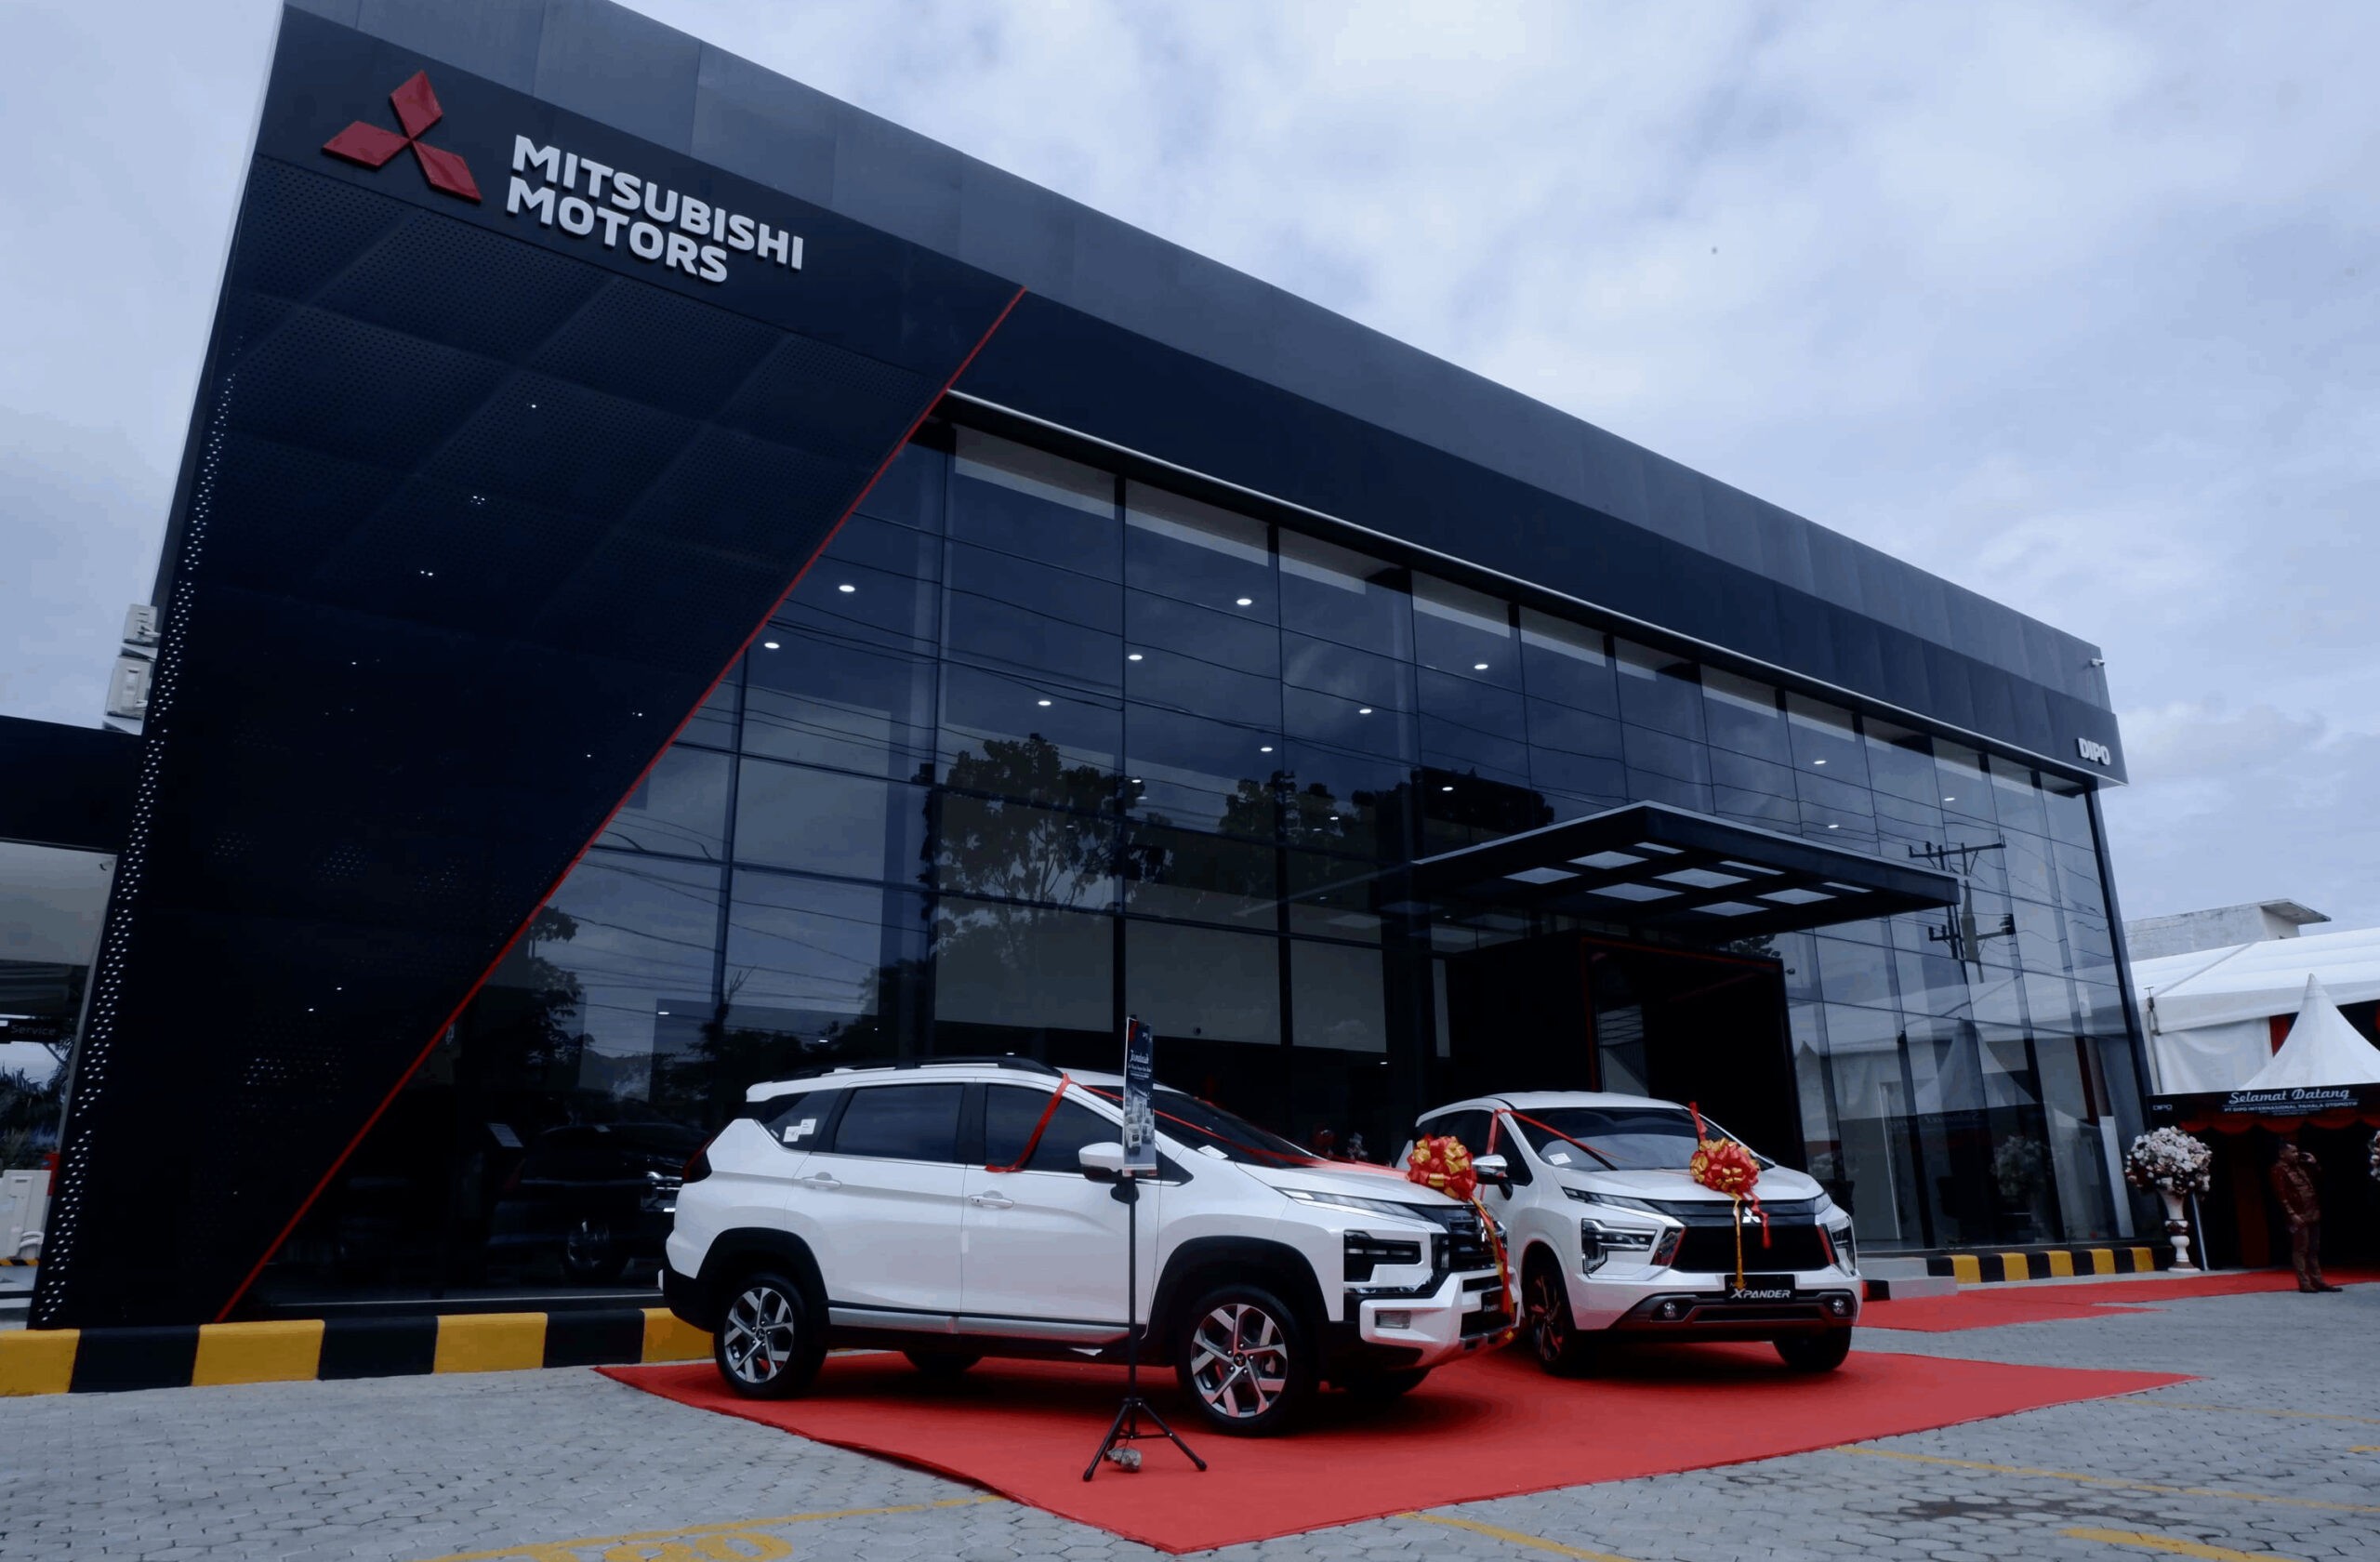 Mitsubishi Motors Tambah Diler Resmi untuk Perkuat Jaringan di Wilayah Sumatera Utara